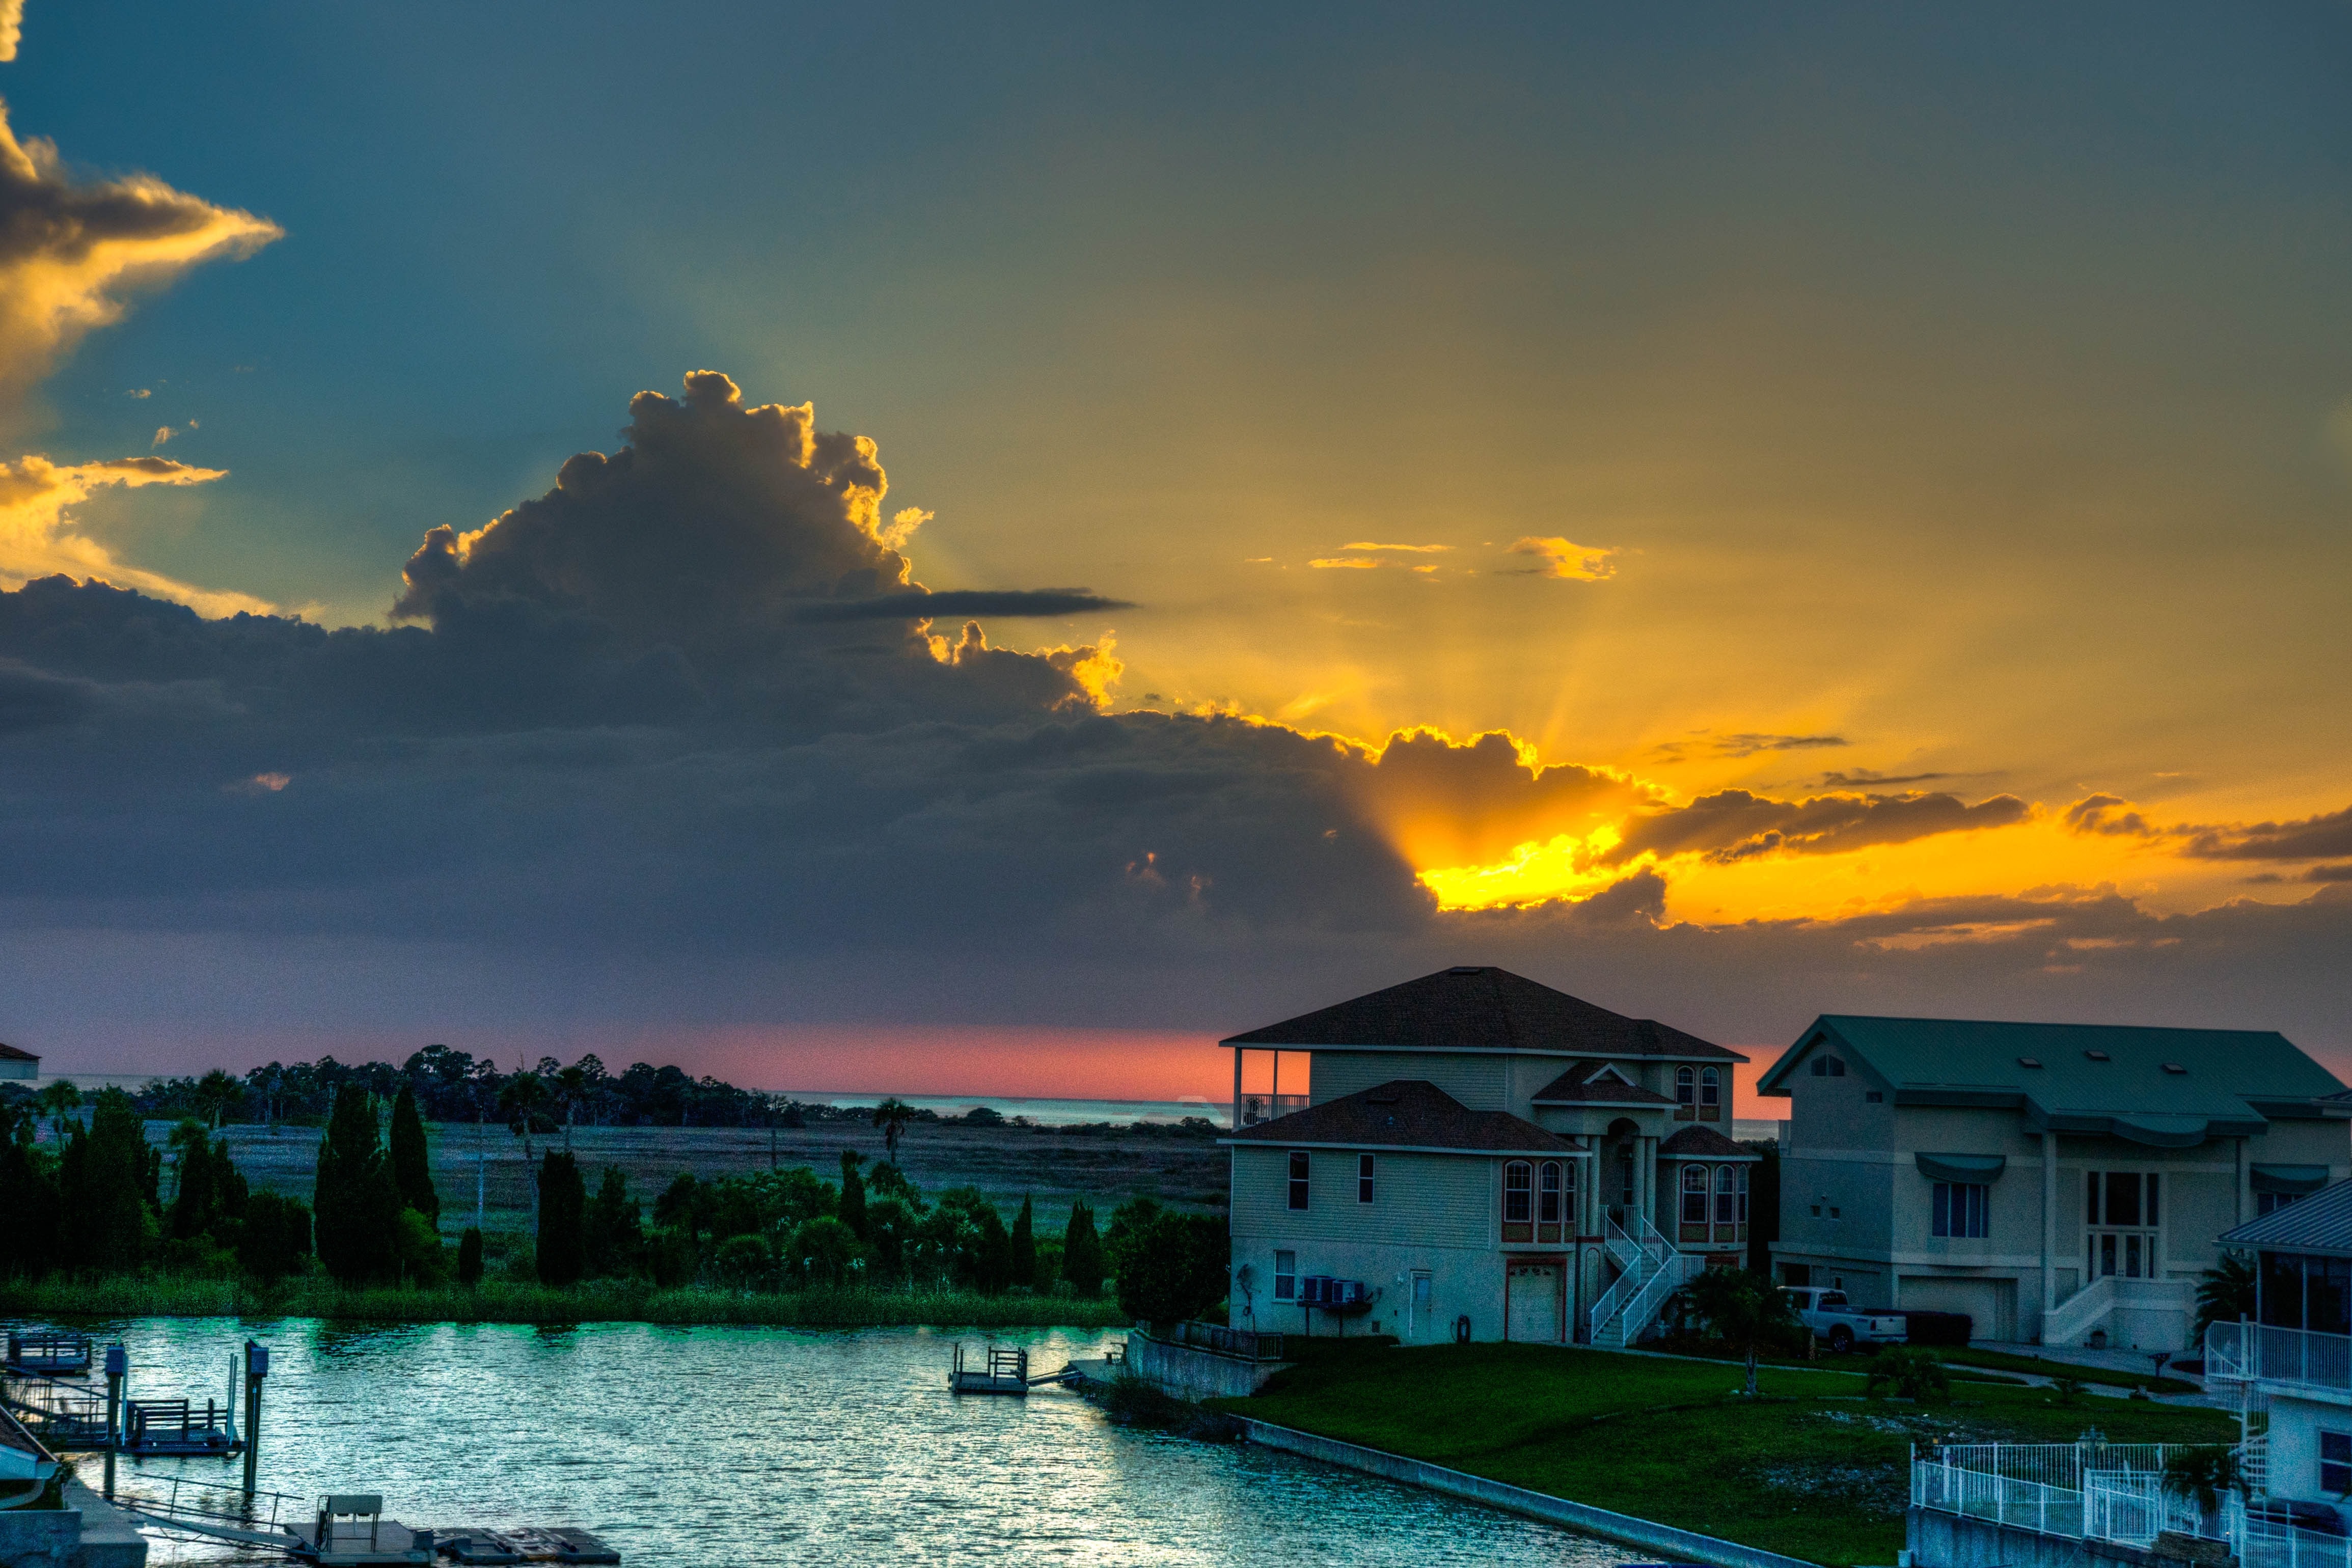 Florida, Beach, Canal, Sunset, Nature, cloud - sky, sunset